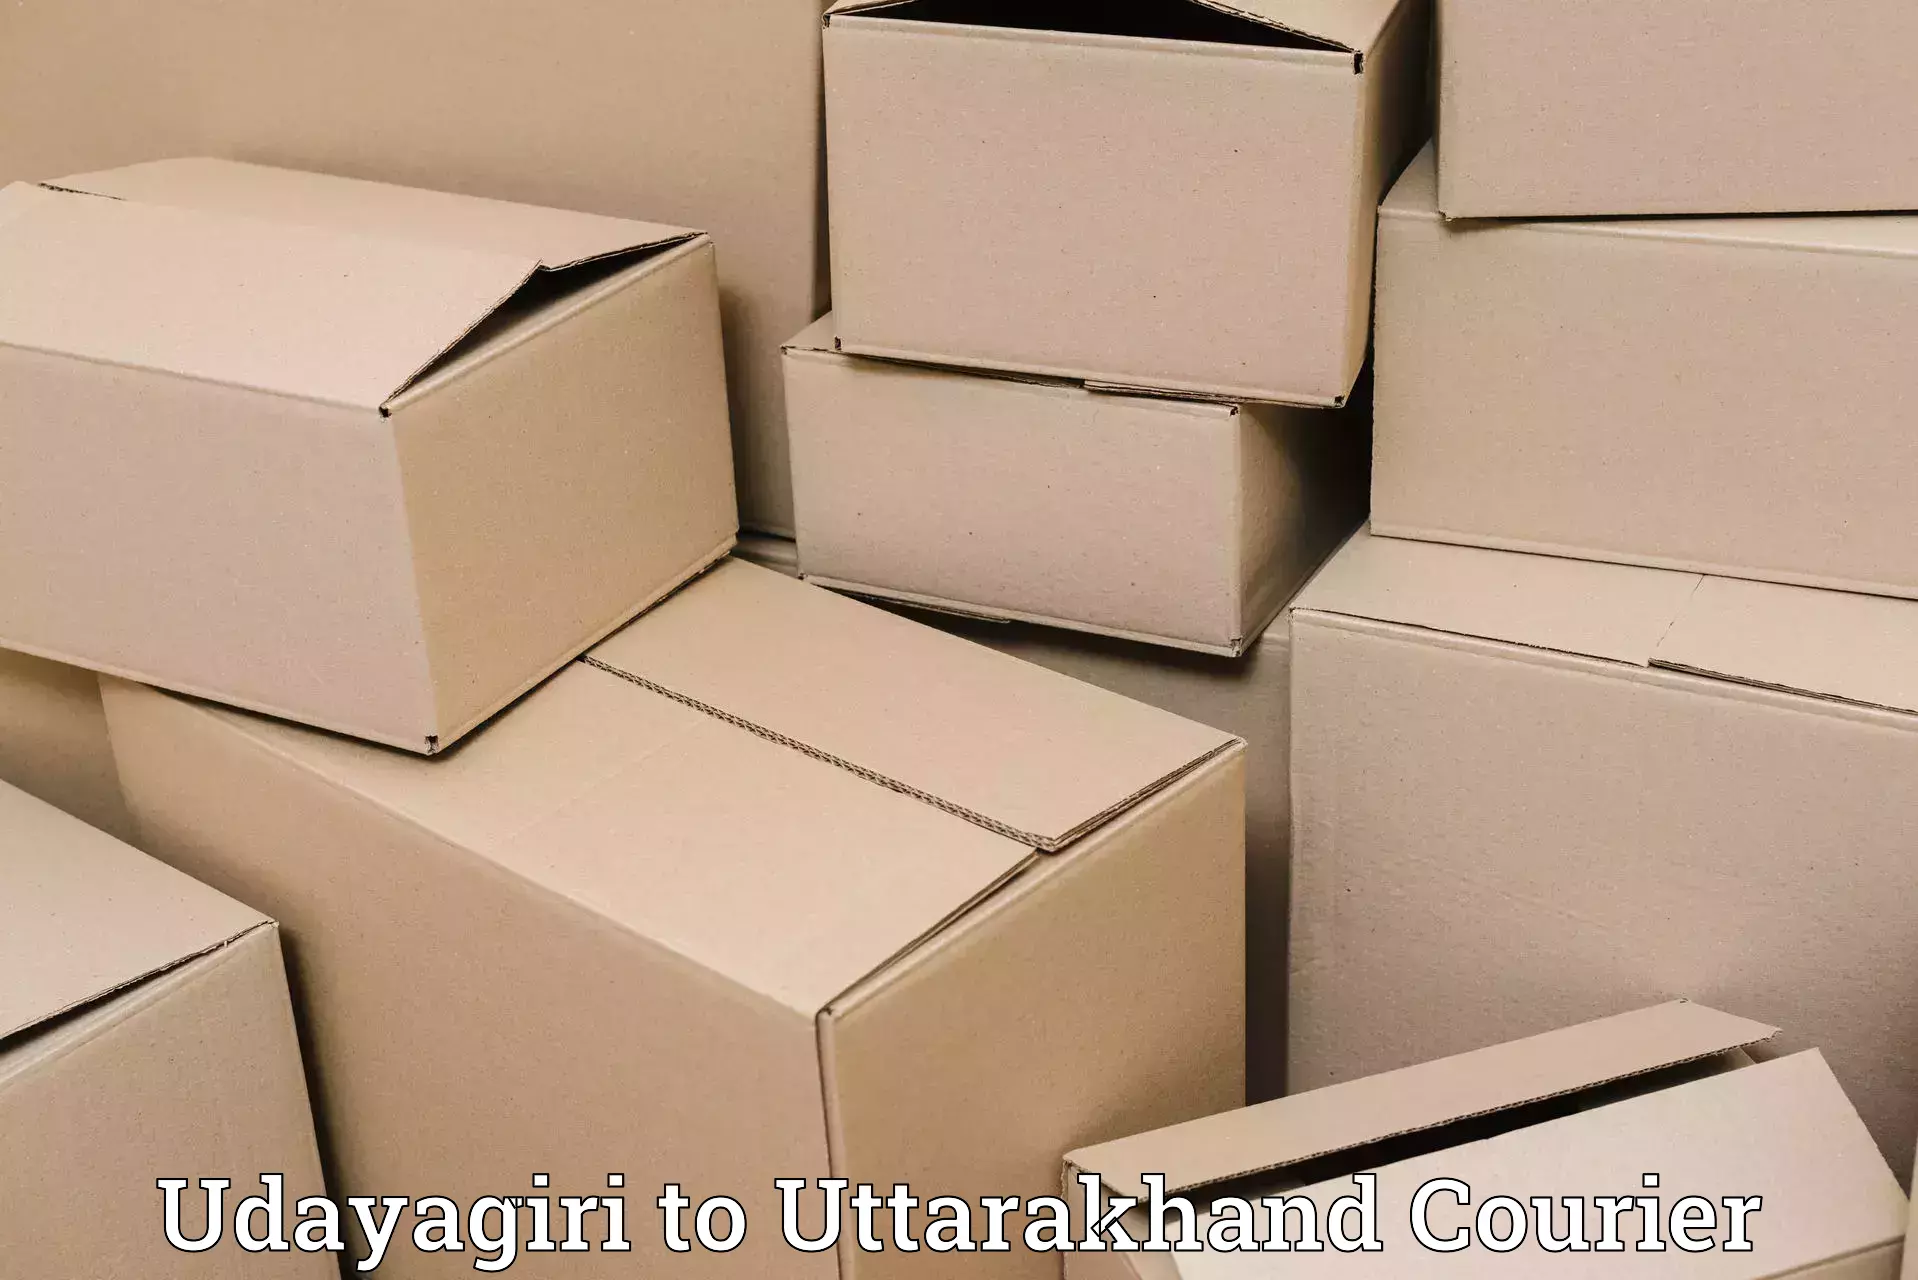 Premium luggage delivery Udayagiri to Uttarakhand